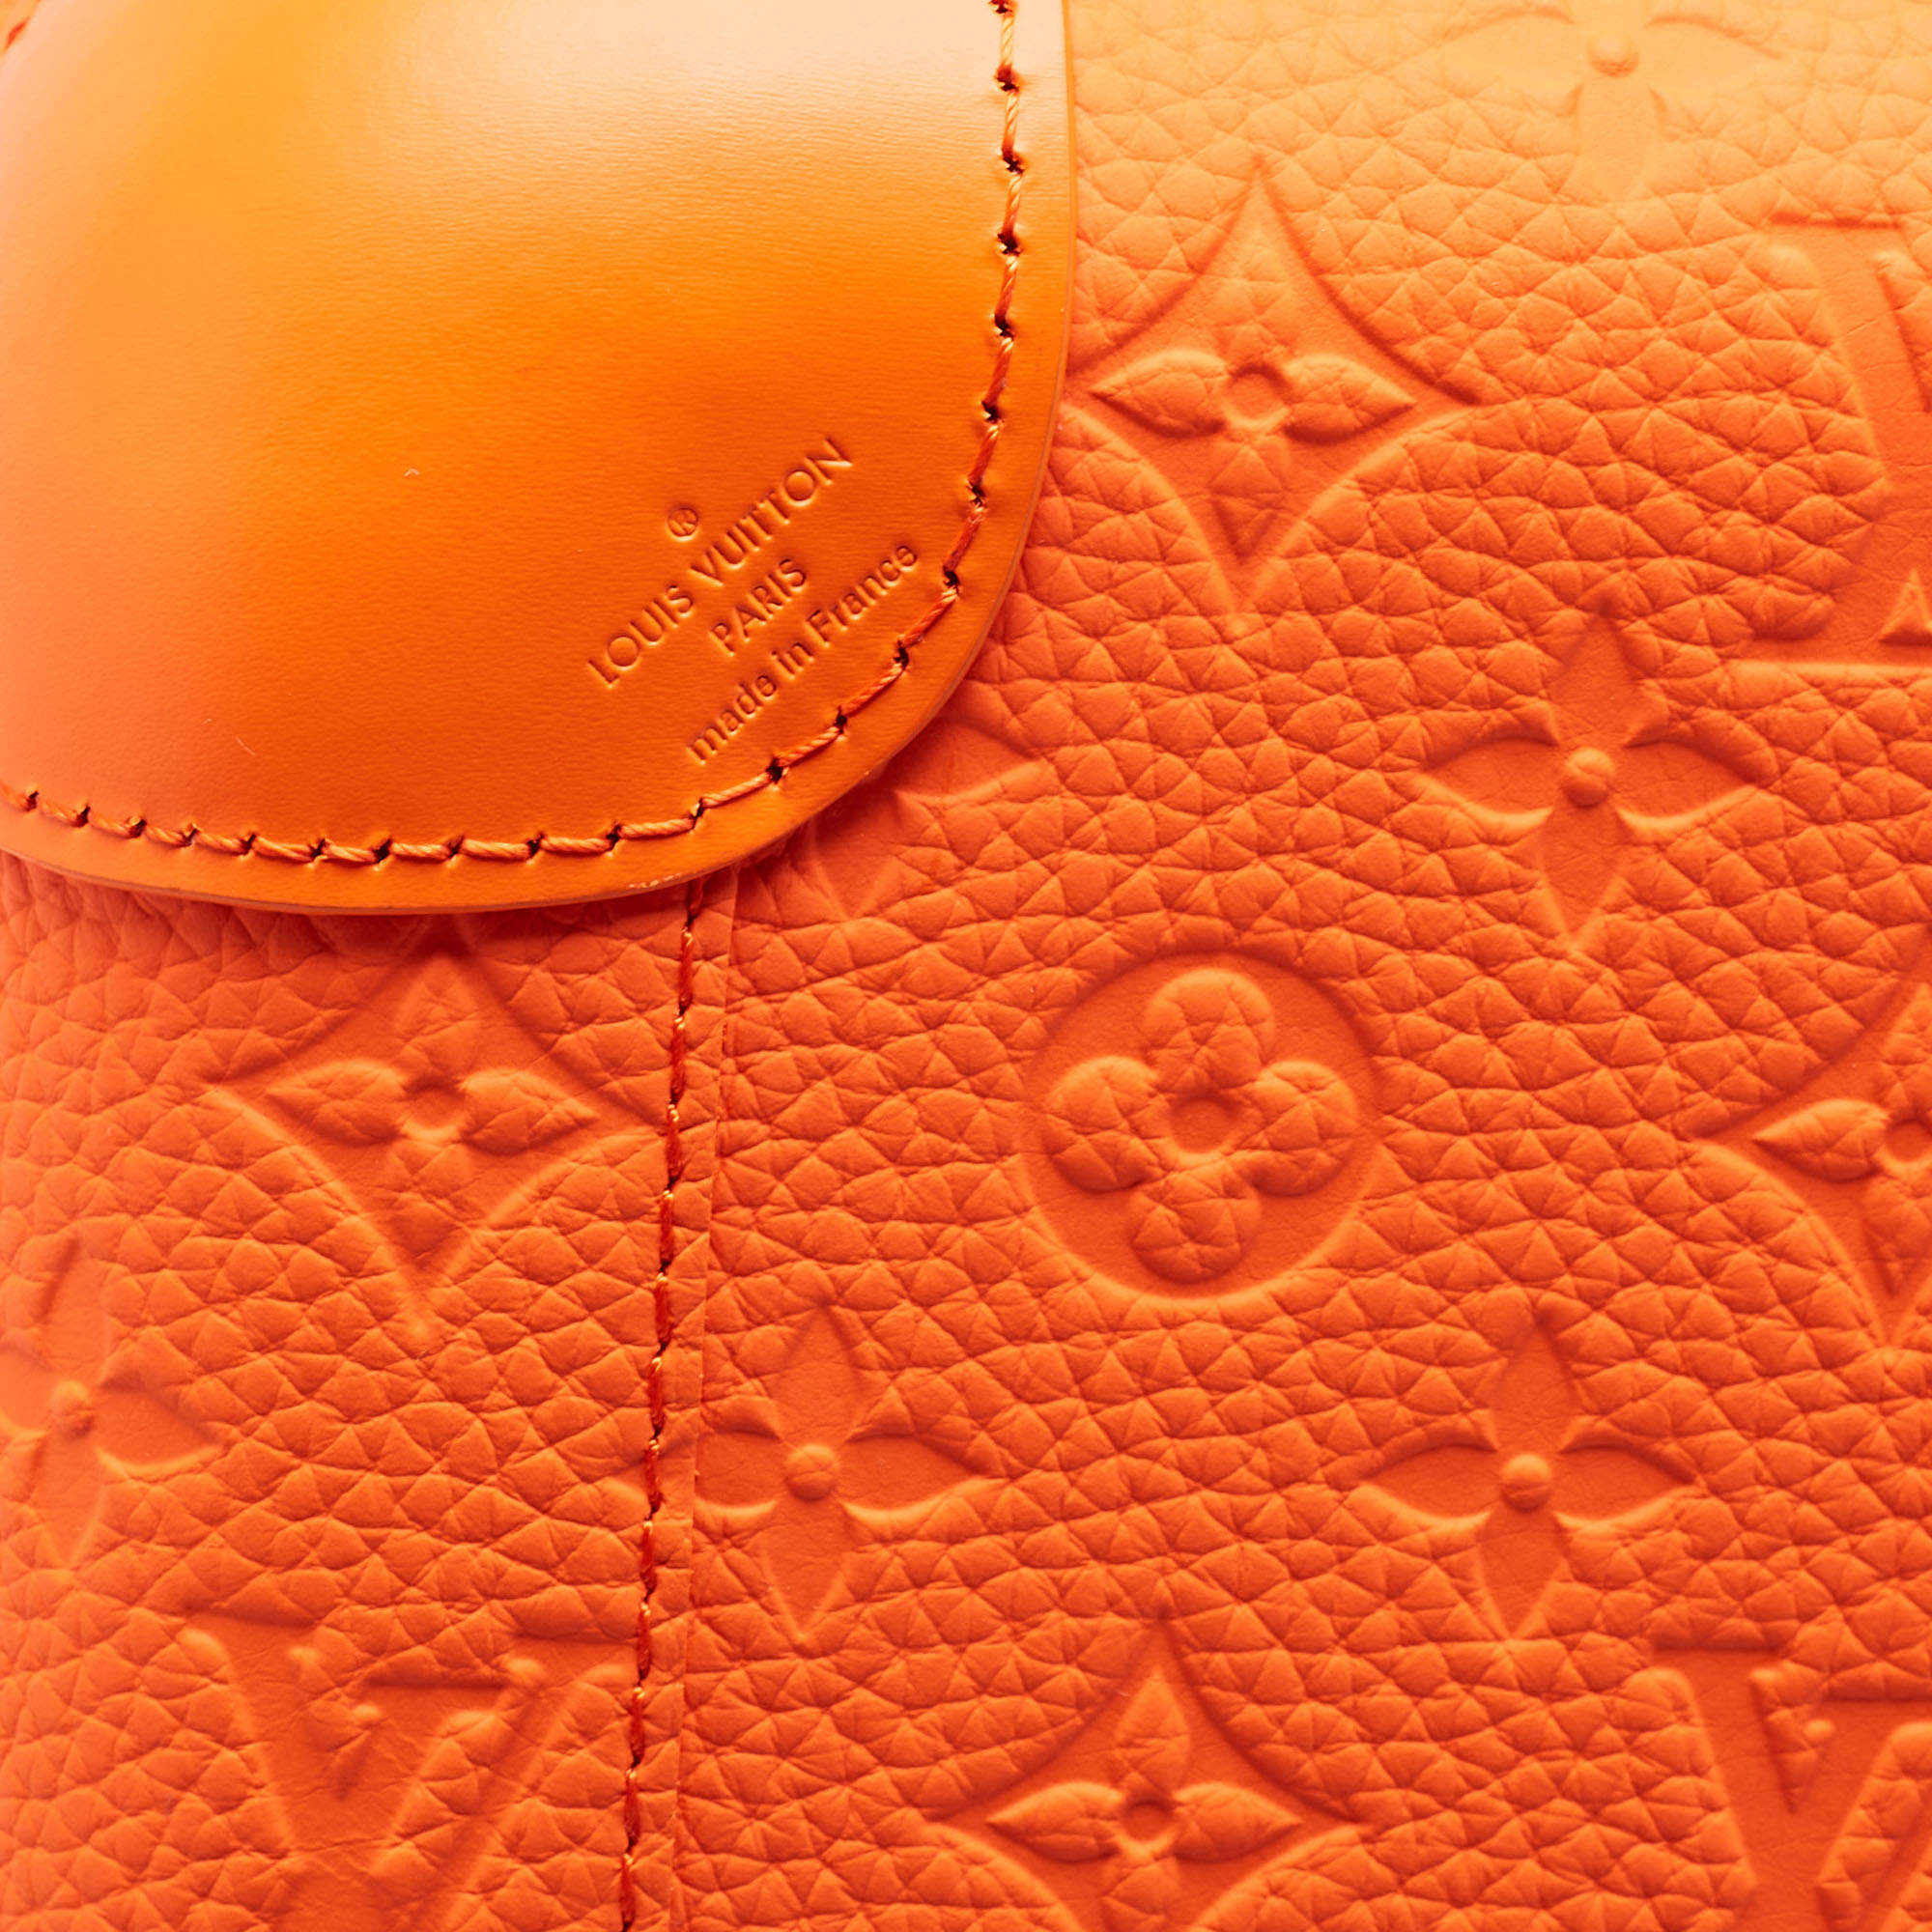 Louis Vuitton Orange Empreinte Leather Horizon 55 Suitcase Louis Vuitton